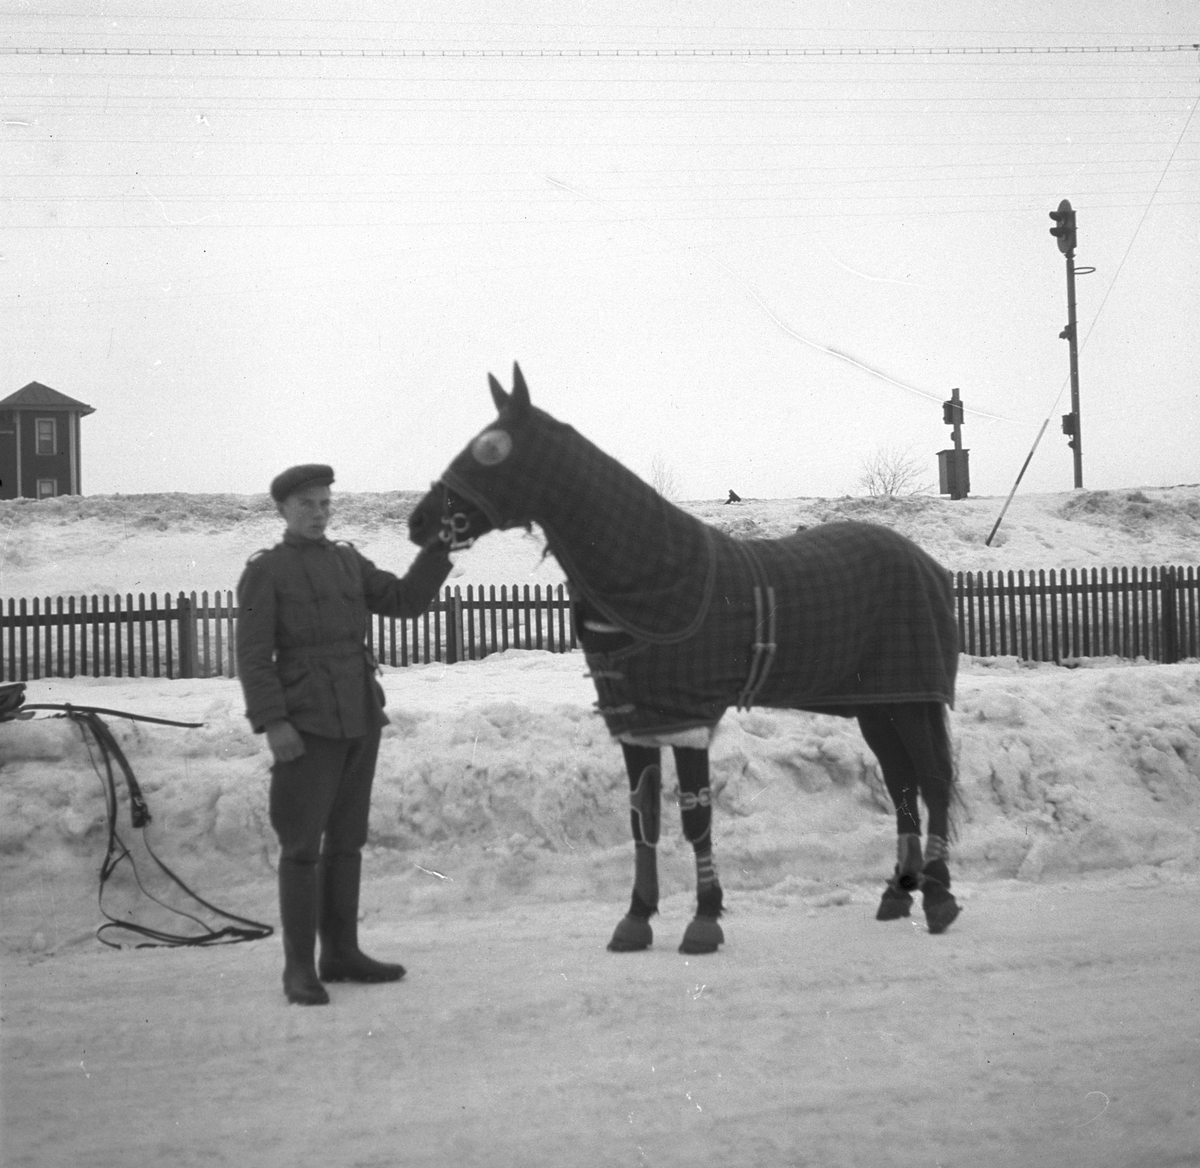 Malmbergs startades 1905 av Elof Malmberg. Blev en av Sveriges ledande producenter av artiklar för idrott, jakt, fiske, skytte och friluftsliv. En man och en häst med utrustning från Malmbergs. Den 26 januari 1938